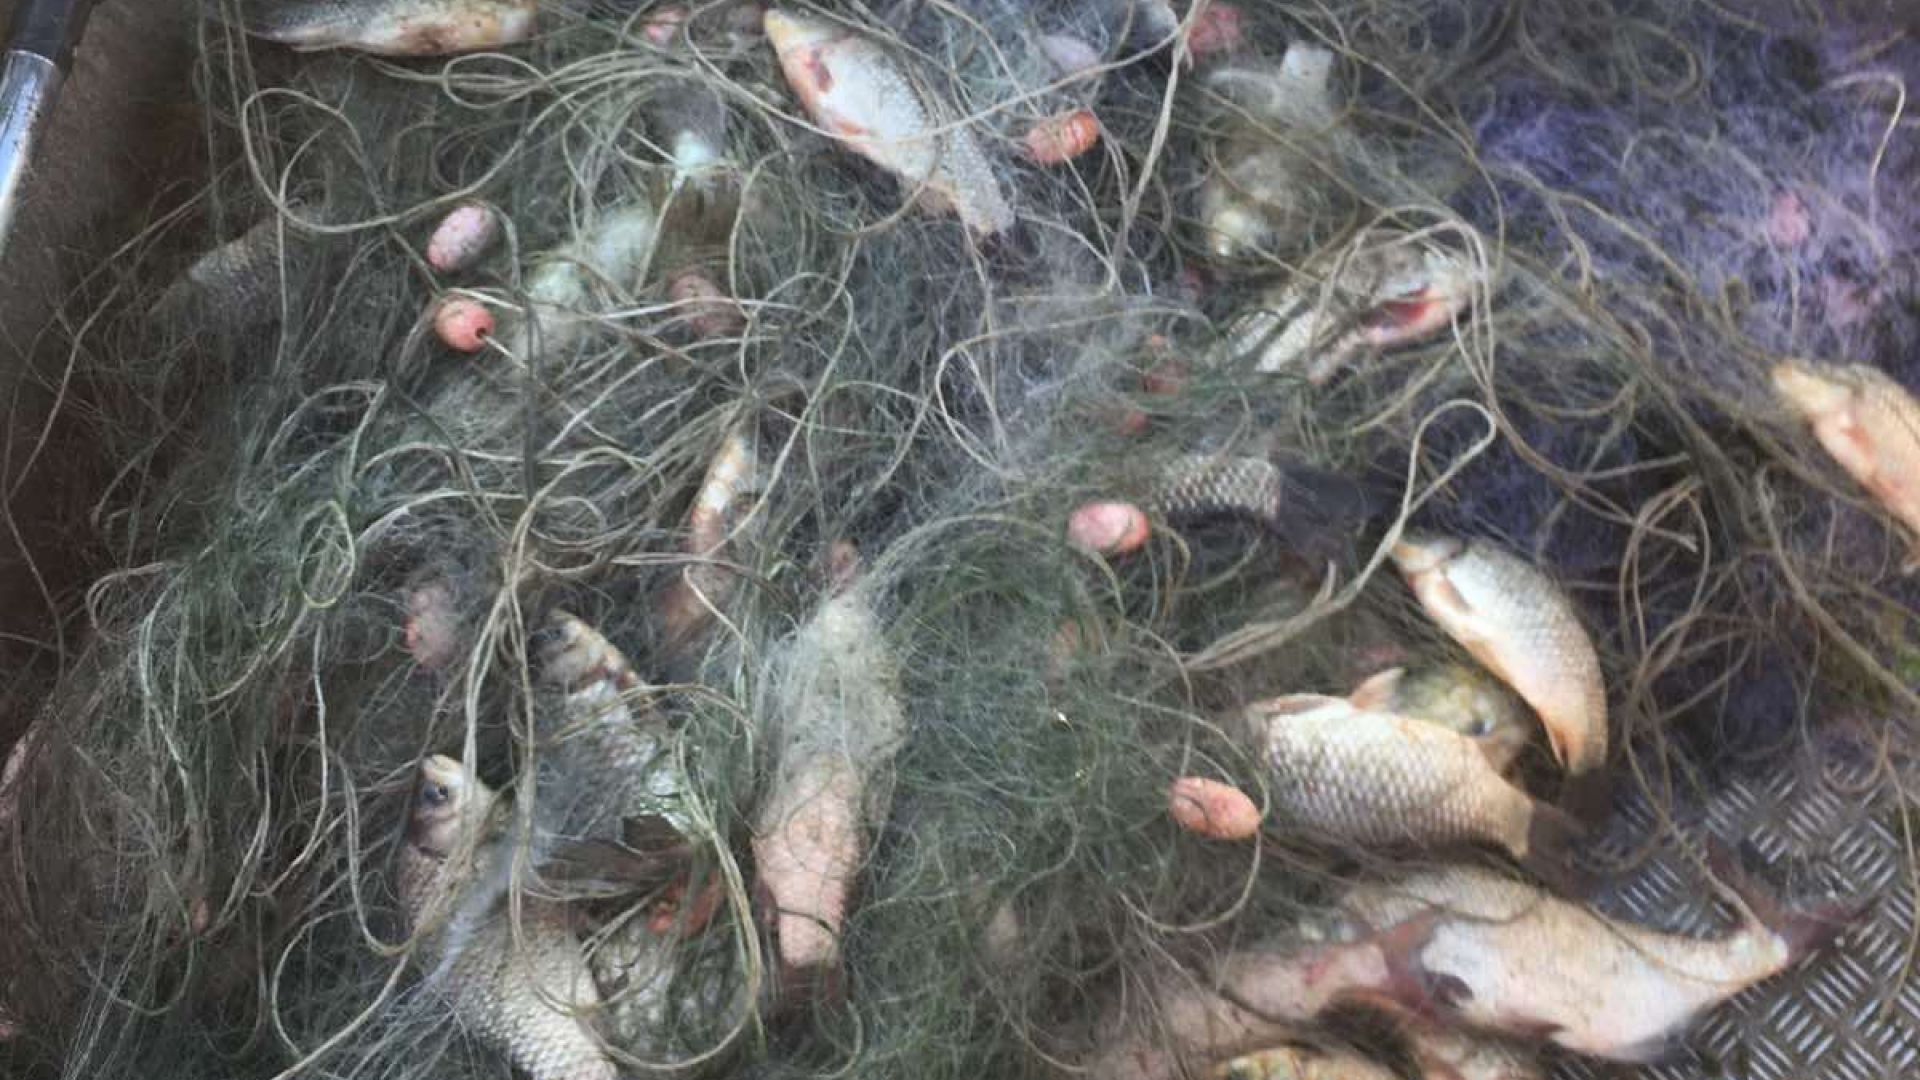 Близо тон риба е върната от мрежи в язовир Мандра